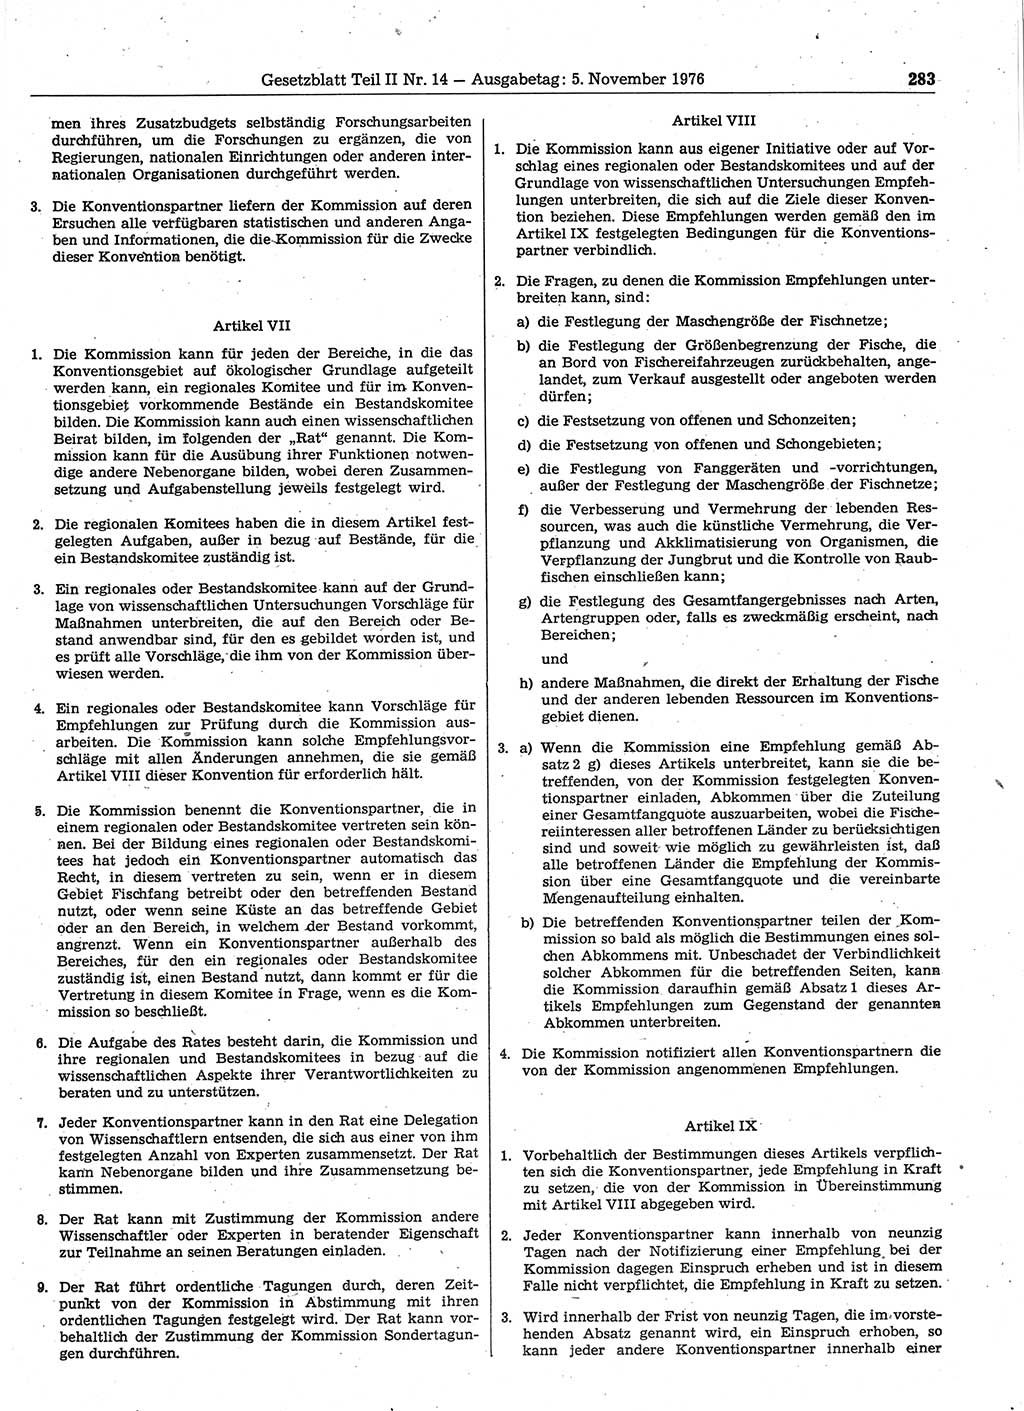 Gesetzblatt (GBl.) der Deutschen Demokratischen Republik (DDR) Teil ⅠⅠ 1976, Seite 283 (GBl. DDR ⅠⅠ 1976, S. 283)